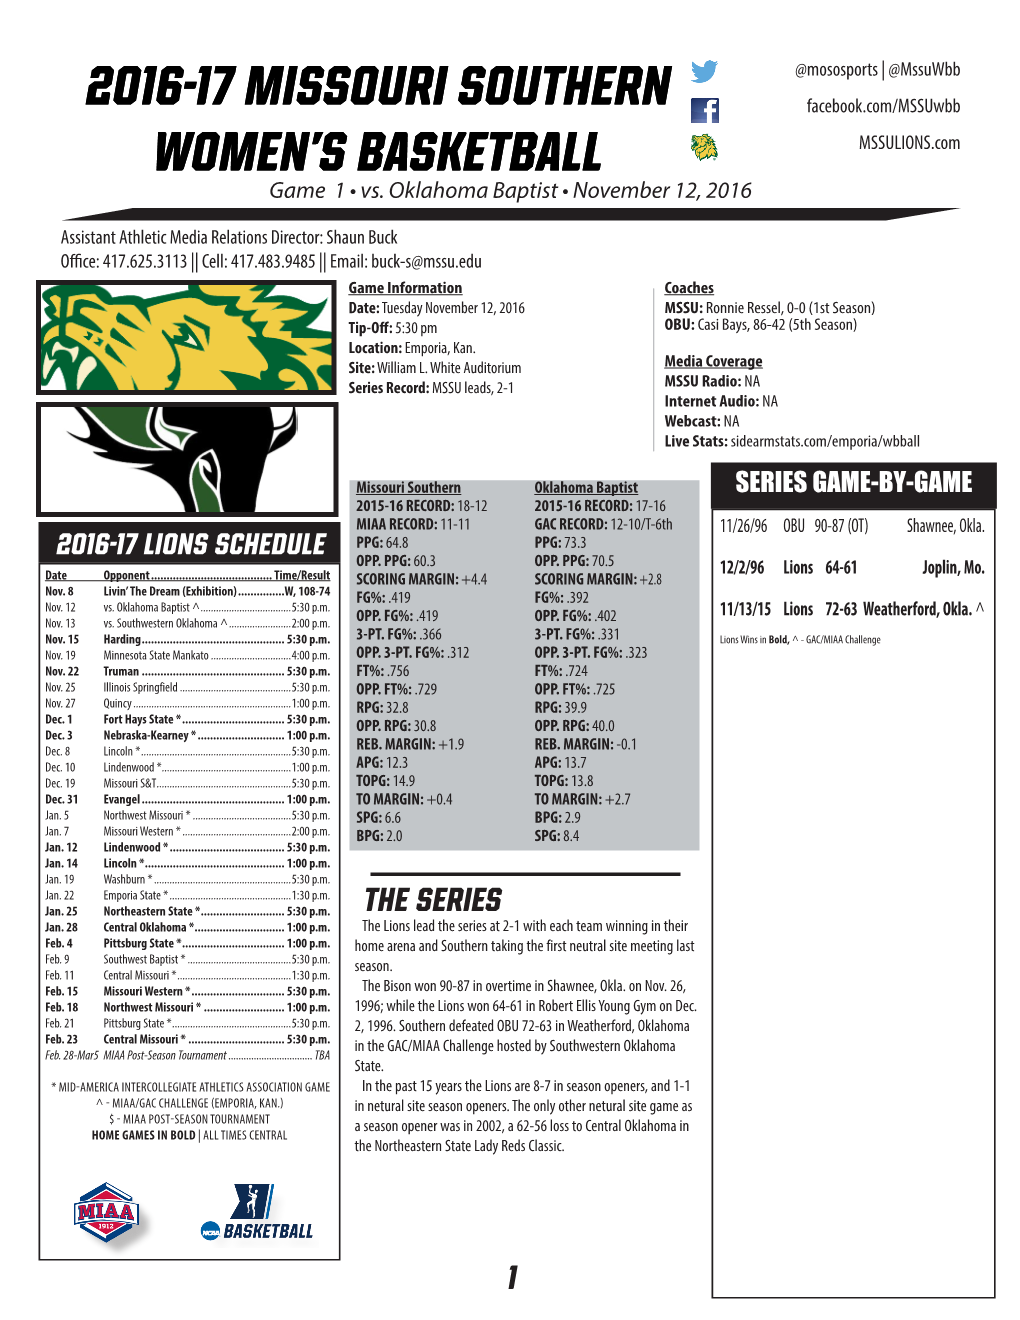 2016-17 Missouri Southern Women's Basketball